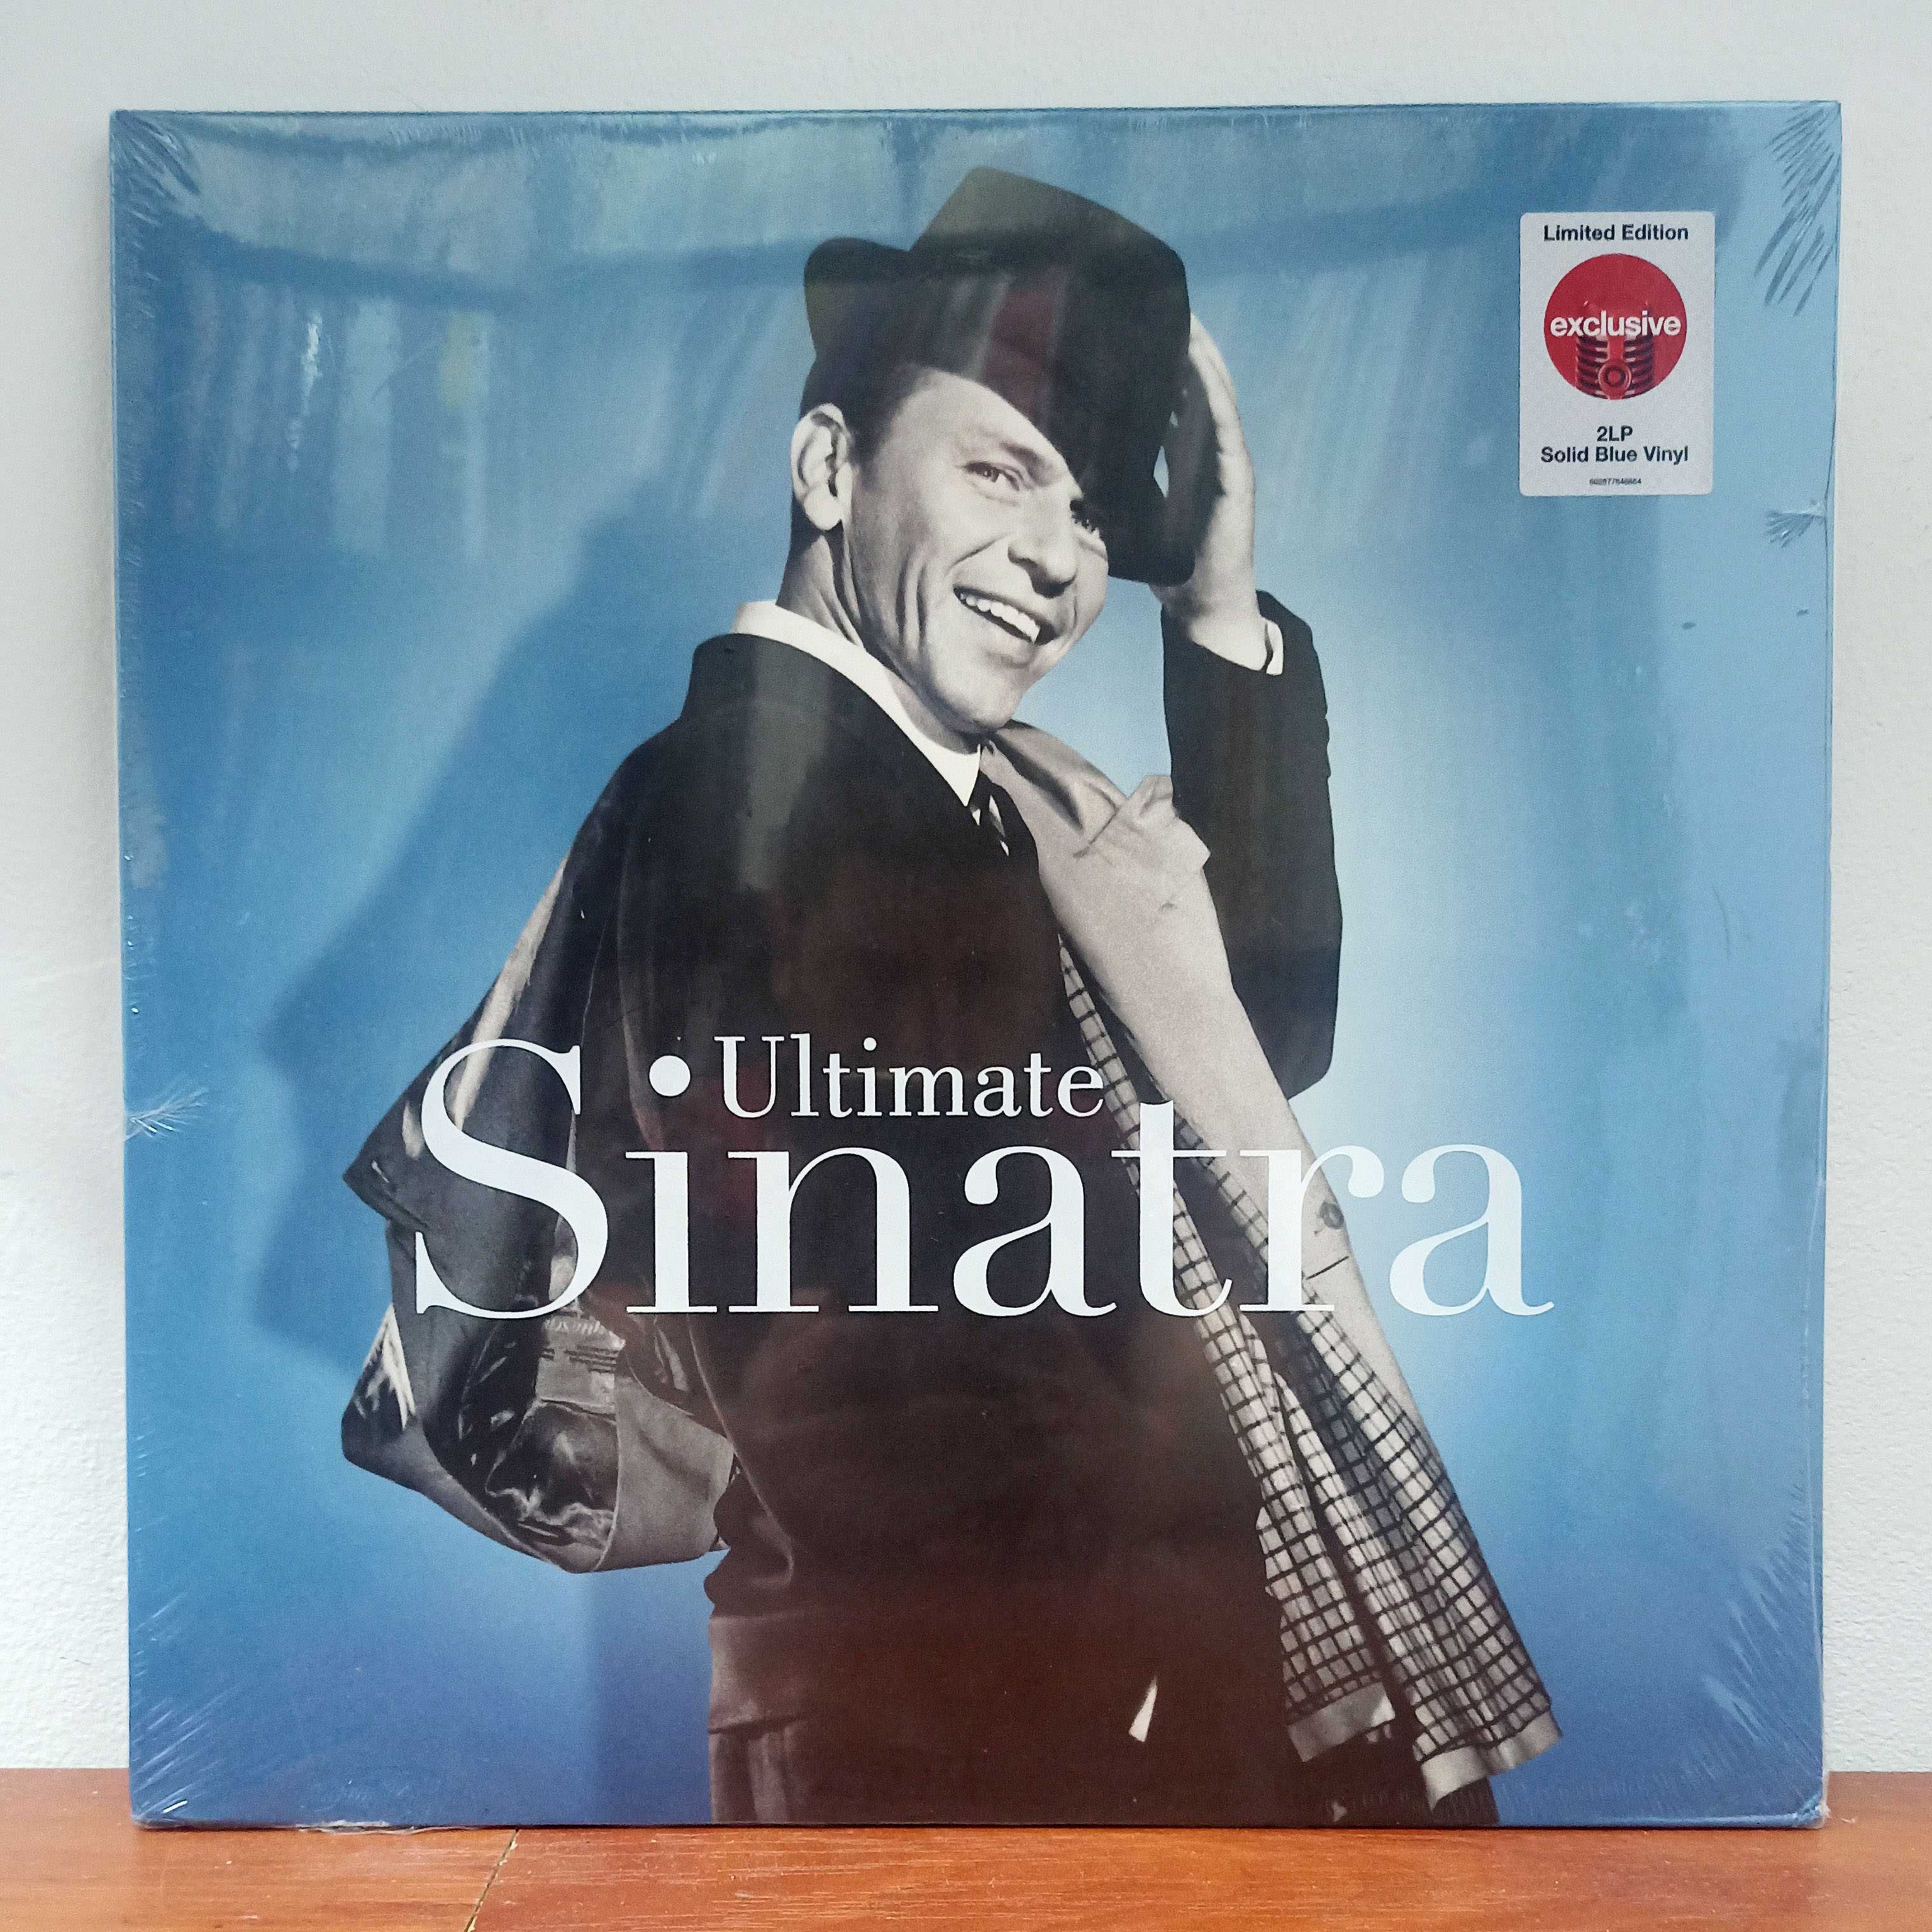 Frank Sinatra – Ultimate Sinatra (2LP, Ltd, Solid Blue Vinyl)